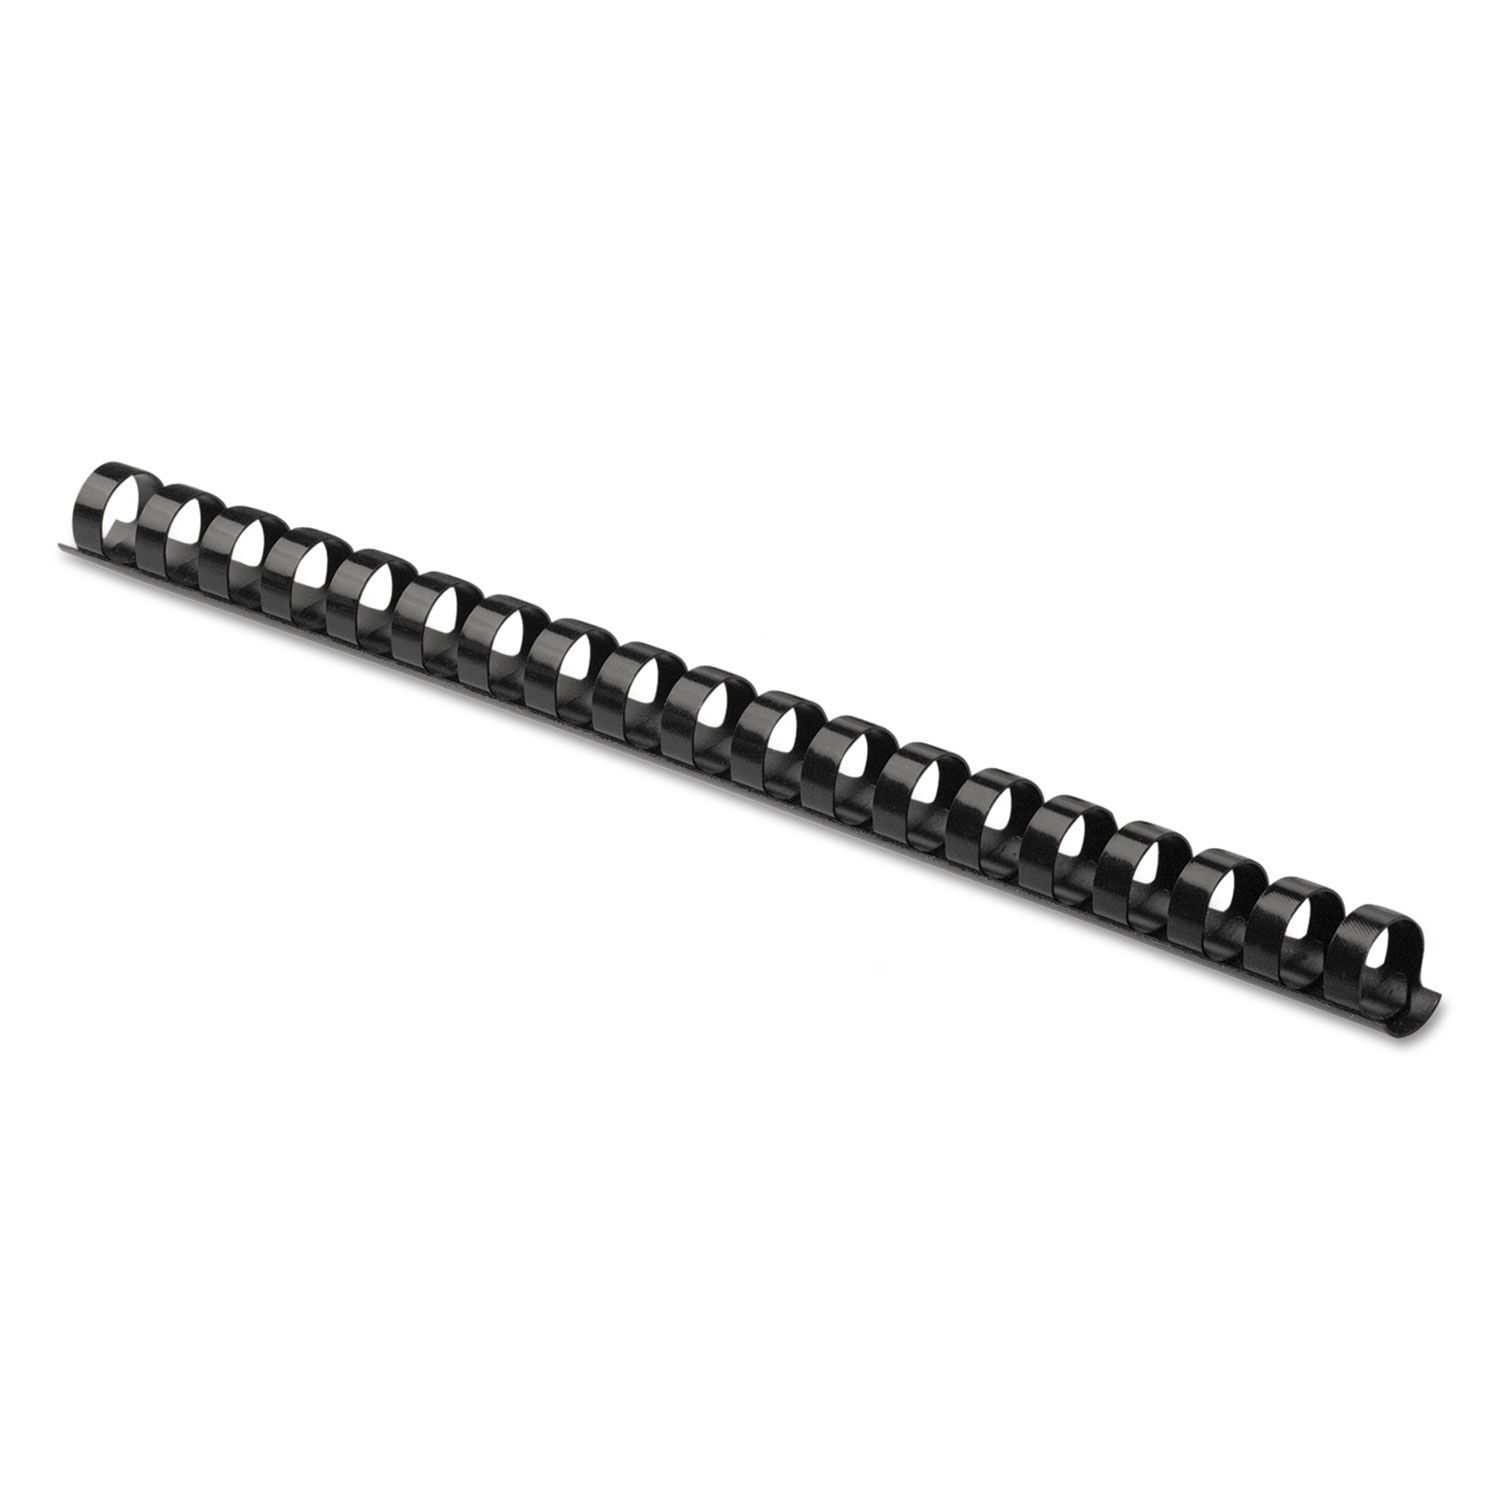 Plastic Comb Bindings, 5/8" Diameter, 120 Sheet Capacity, Black, 25 Combs/Pack